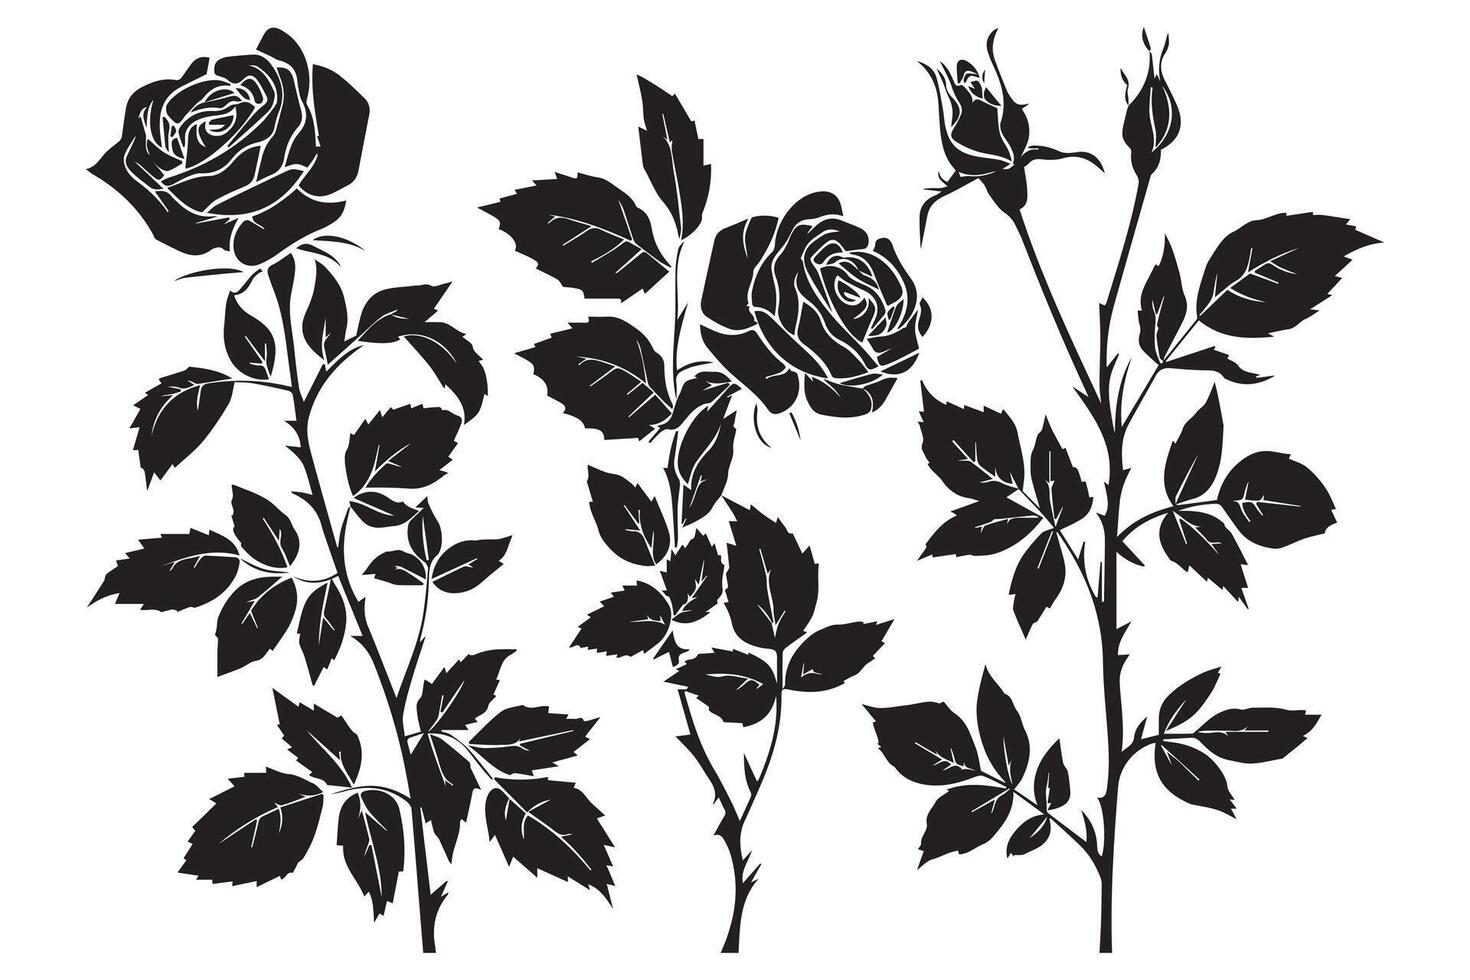 conjunto do três Preto silhuetas do rosa flores isolado em uma branco fundo. minimalista mão desenhado esboço. estoque ilustração vetor